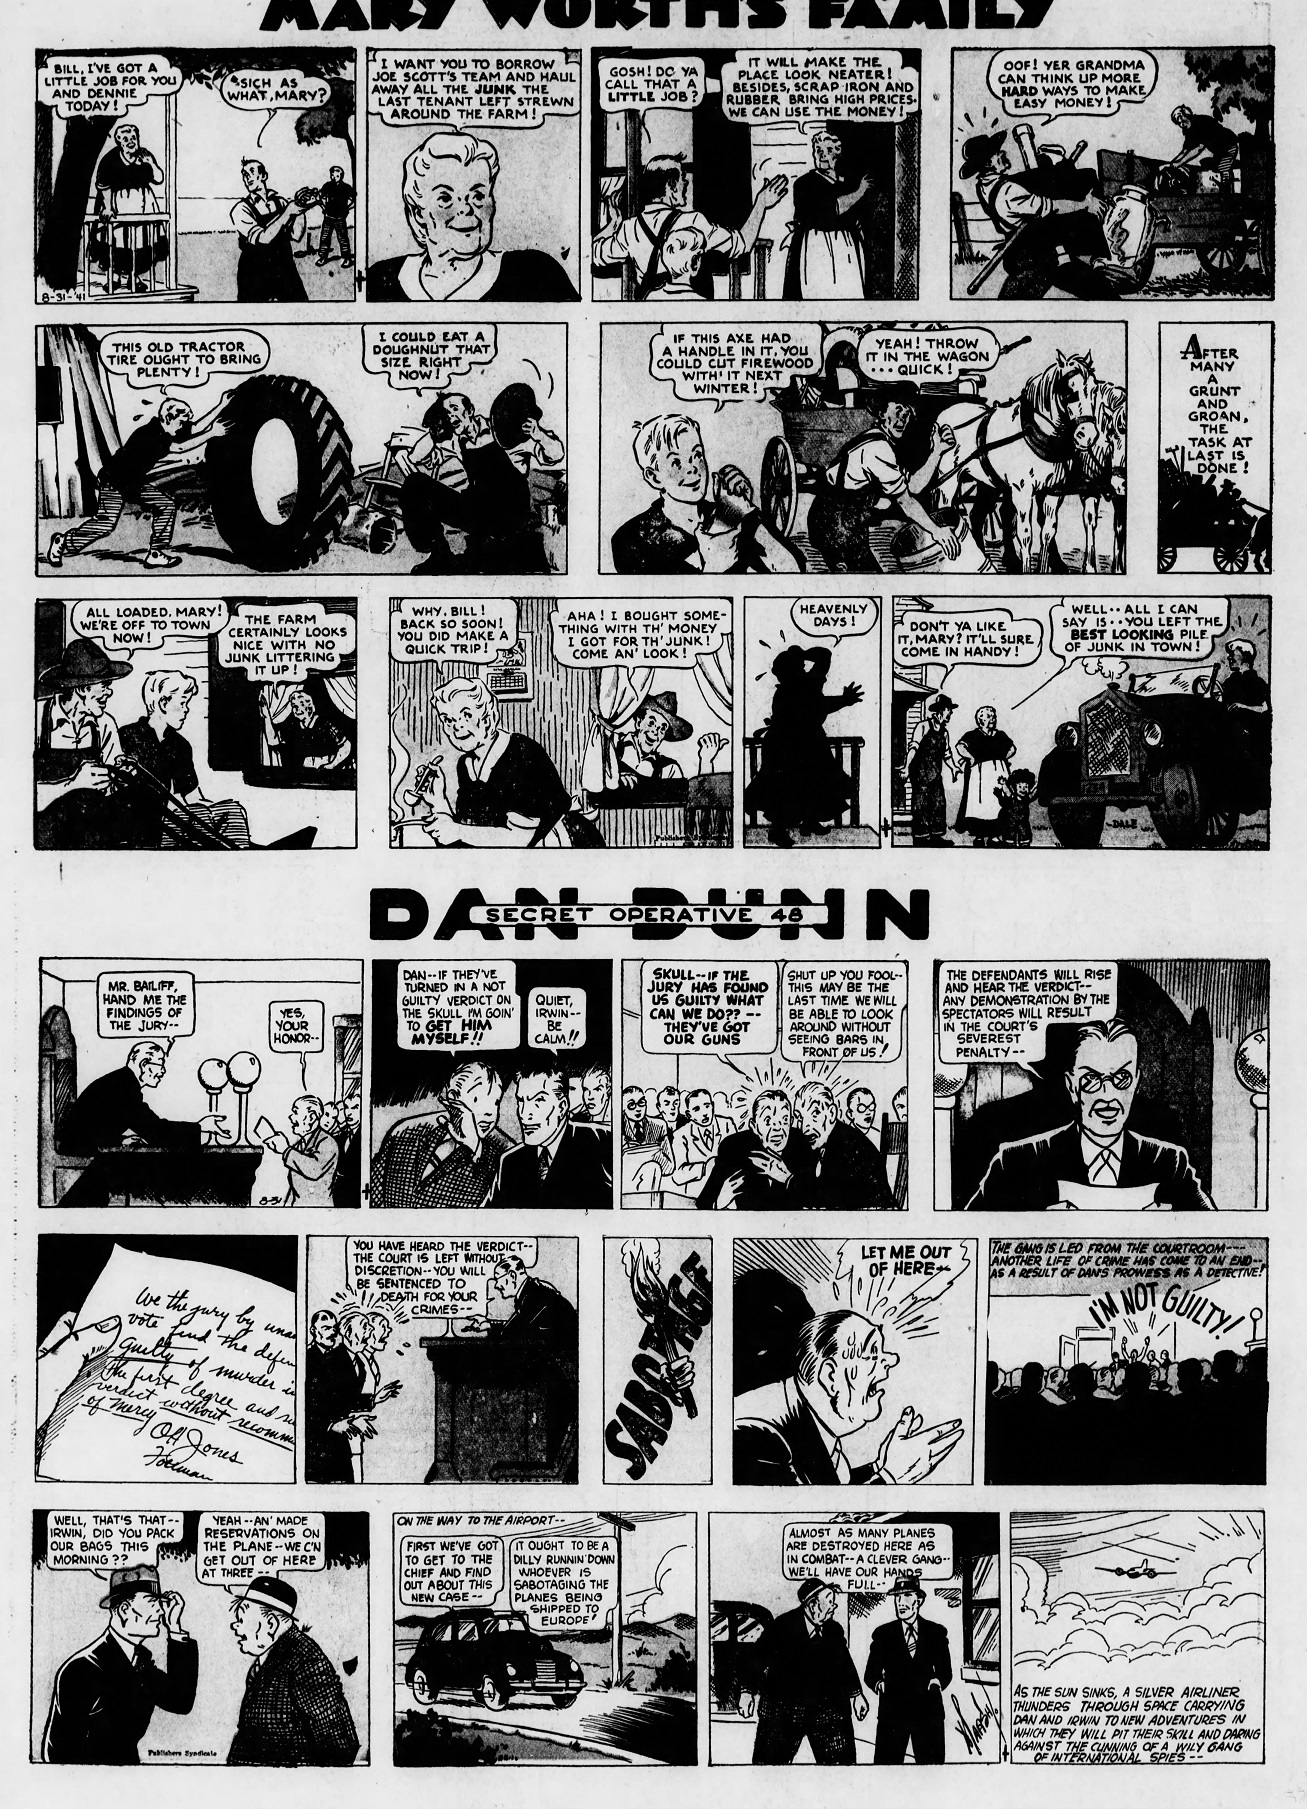 The_Brooklyn_Daily_Eagle_Sun__Aug_31__1941_(8).jpg